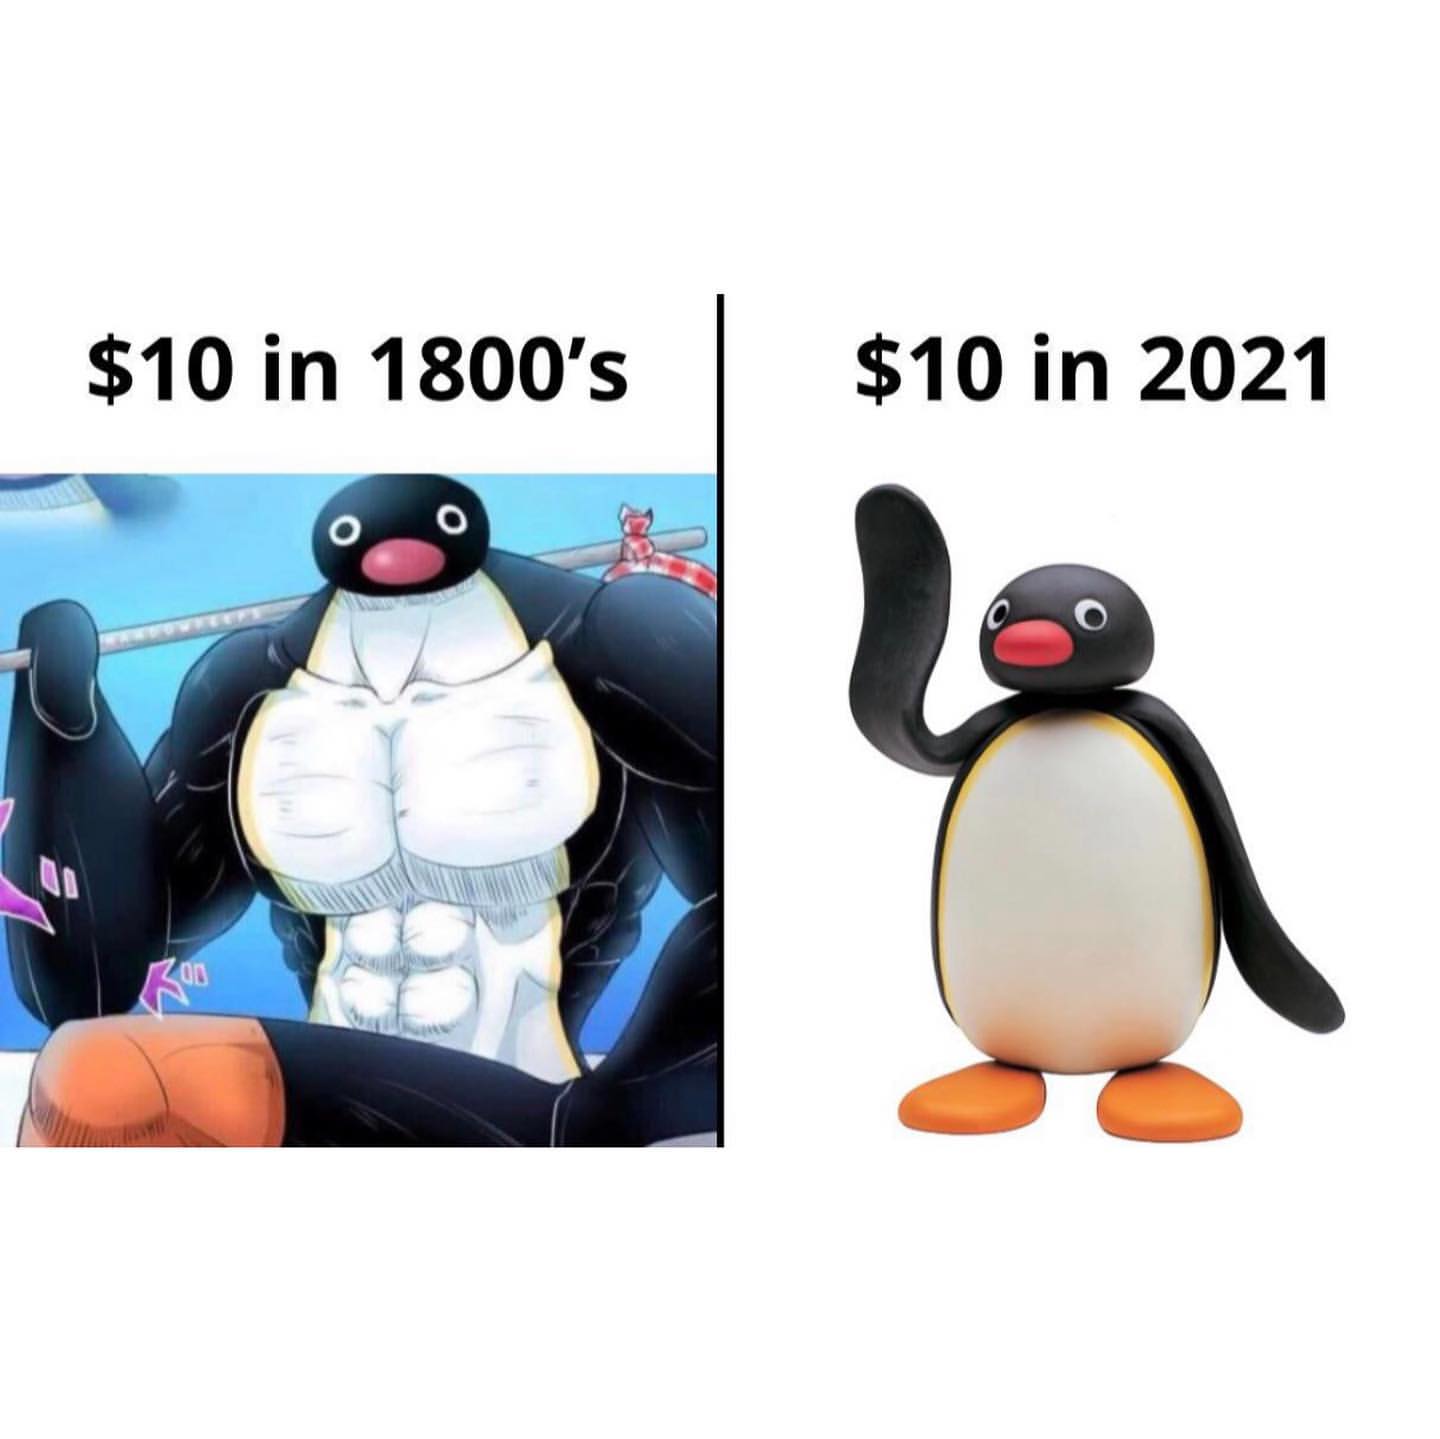 $10 in 1800's $10 in 2021.